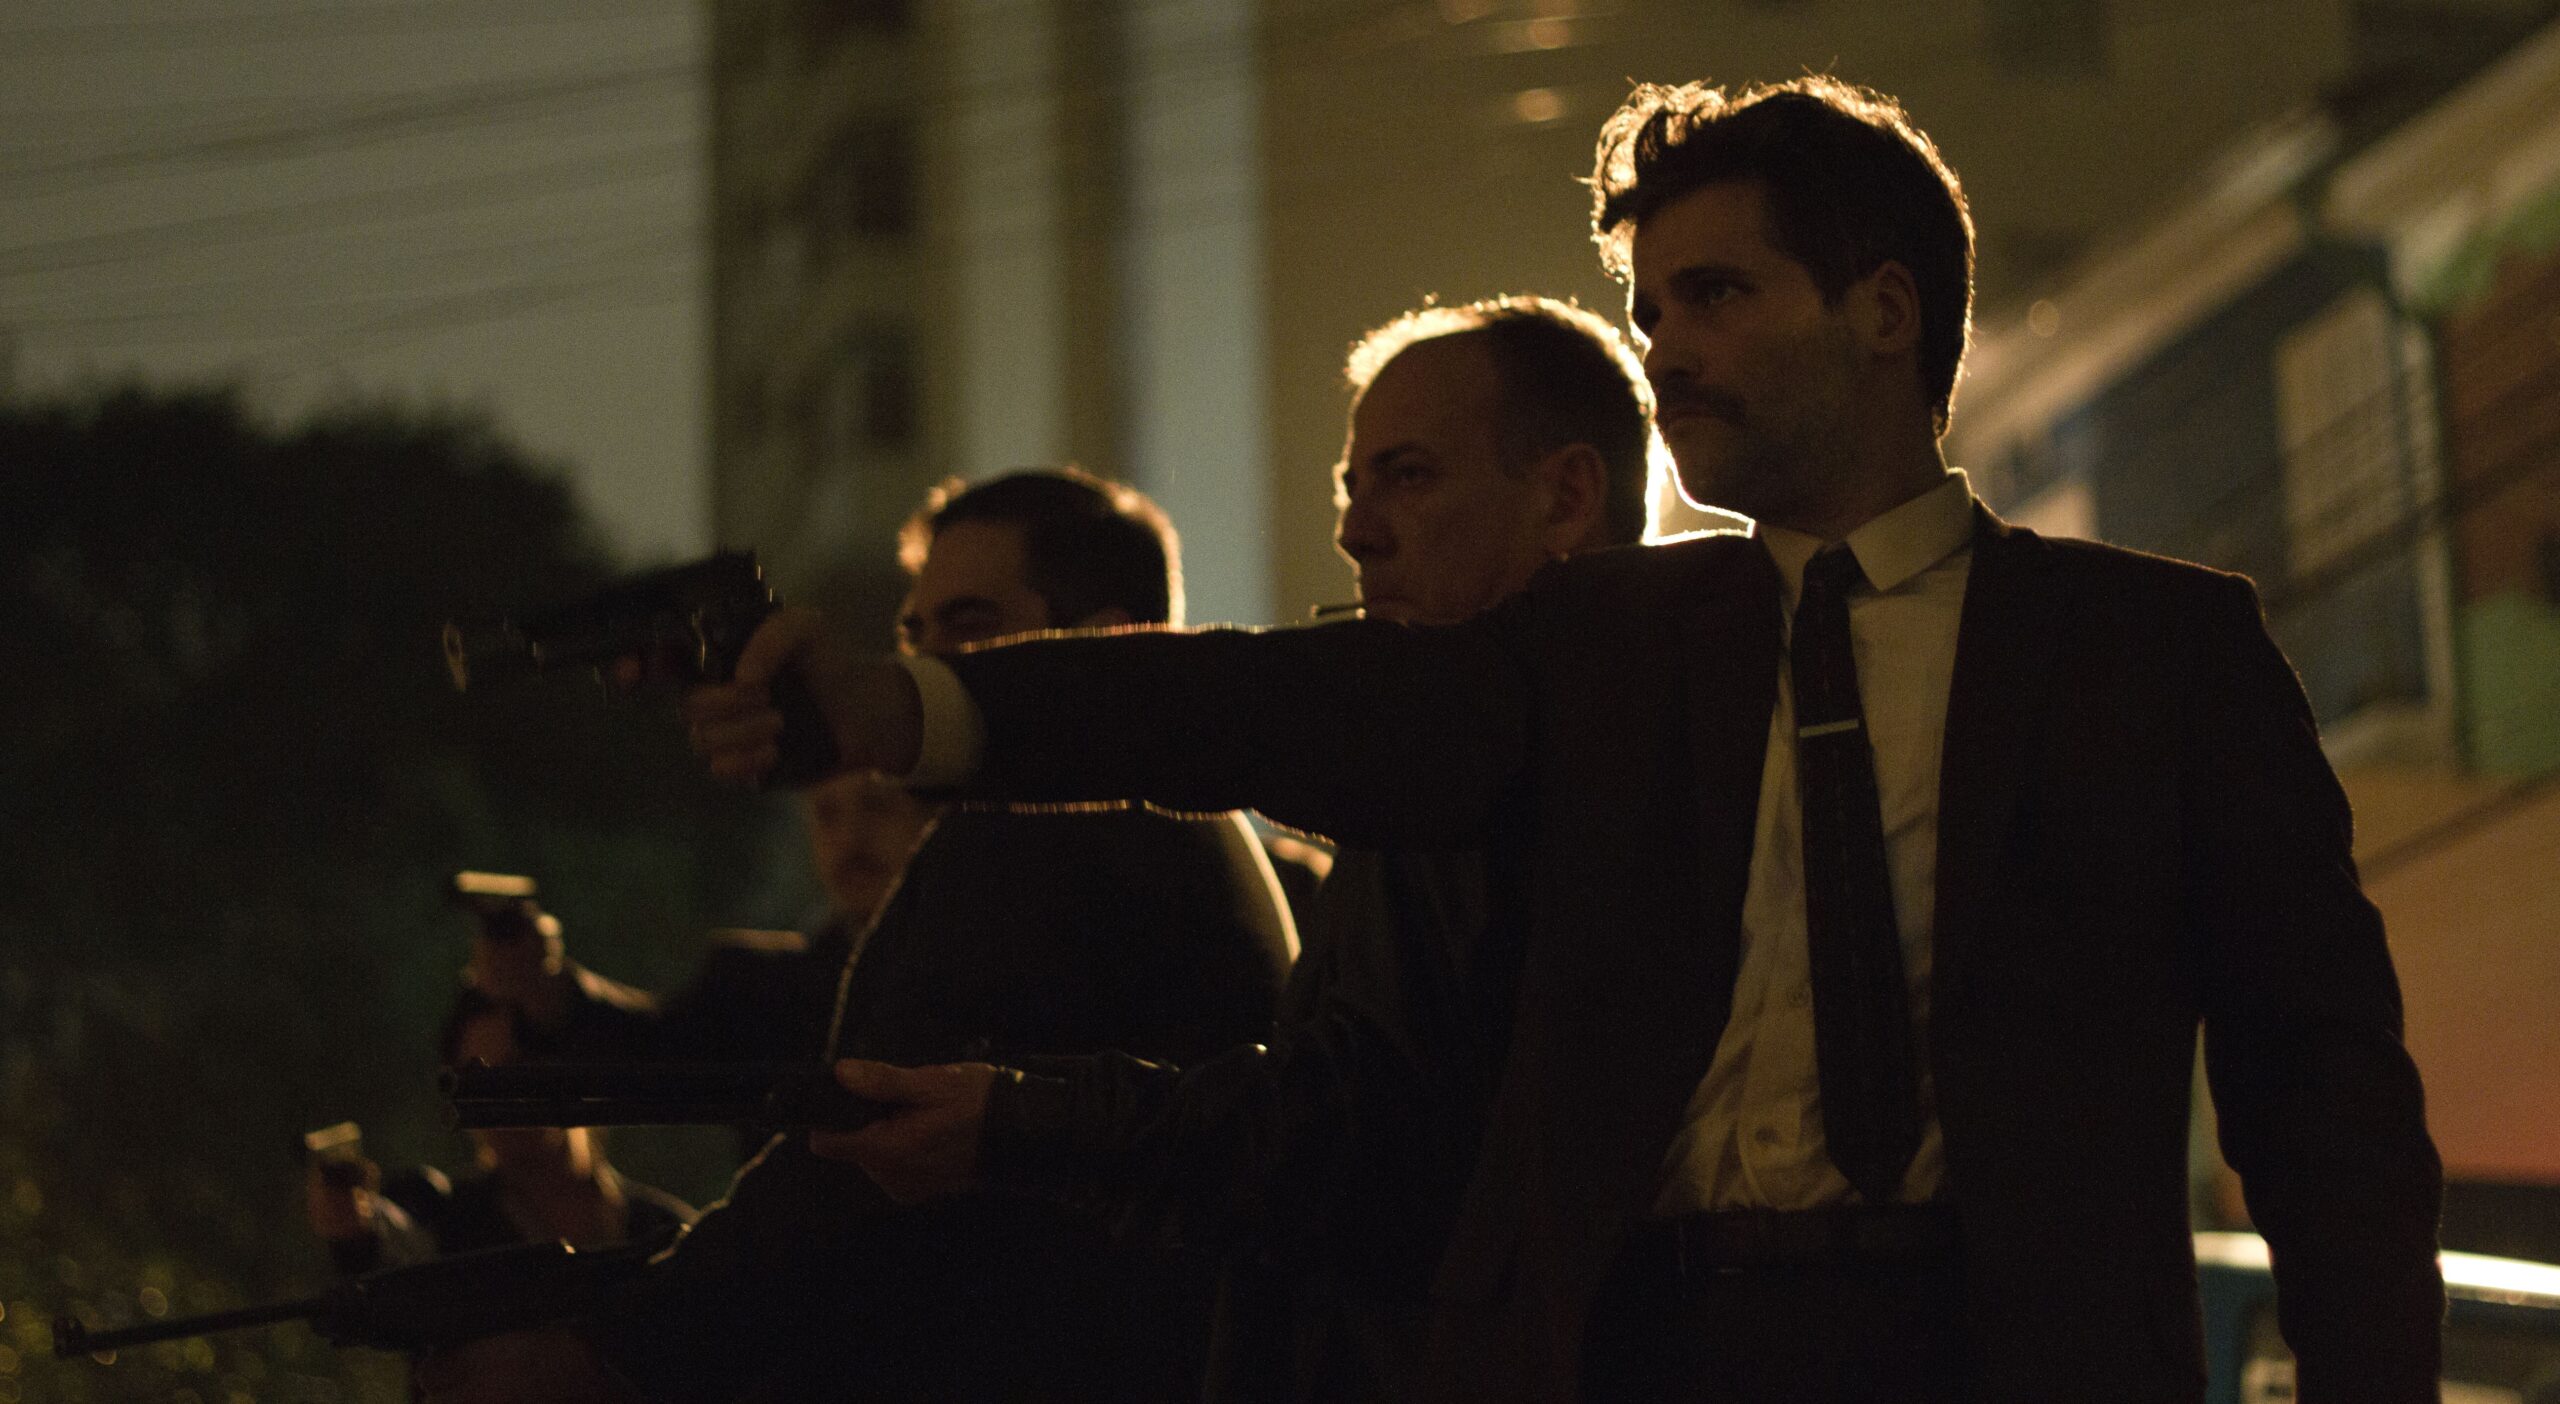 Cena noturna do filme Marighella, mostra vários homens com armas apontadas para um mesmo lugar, atirando.